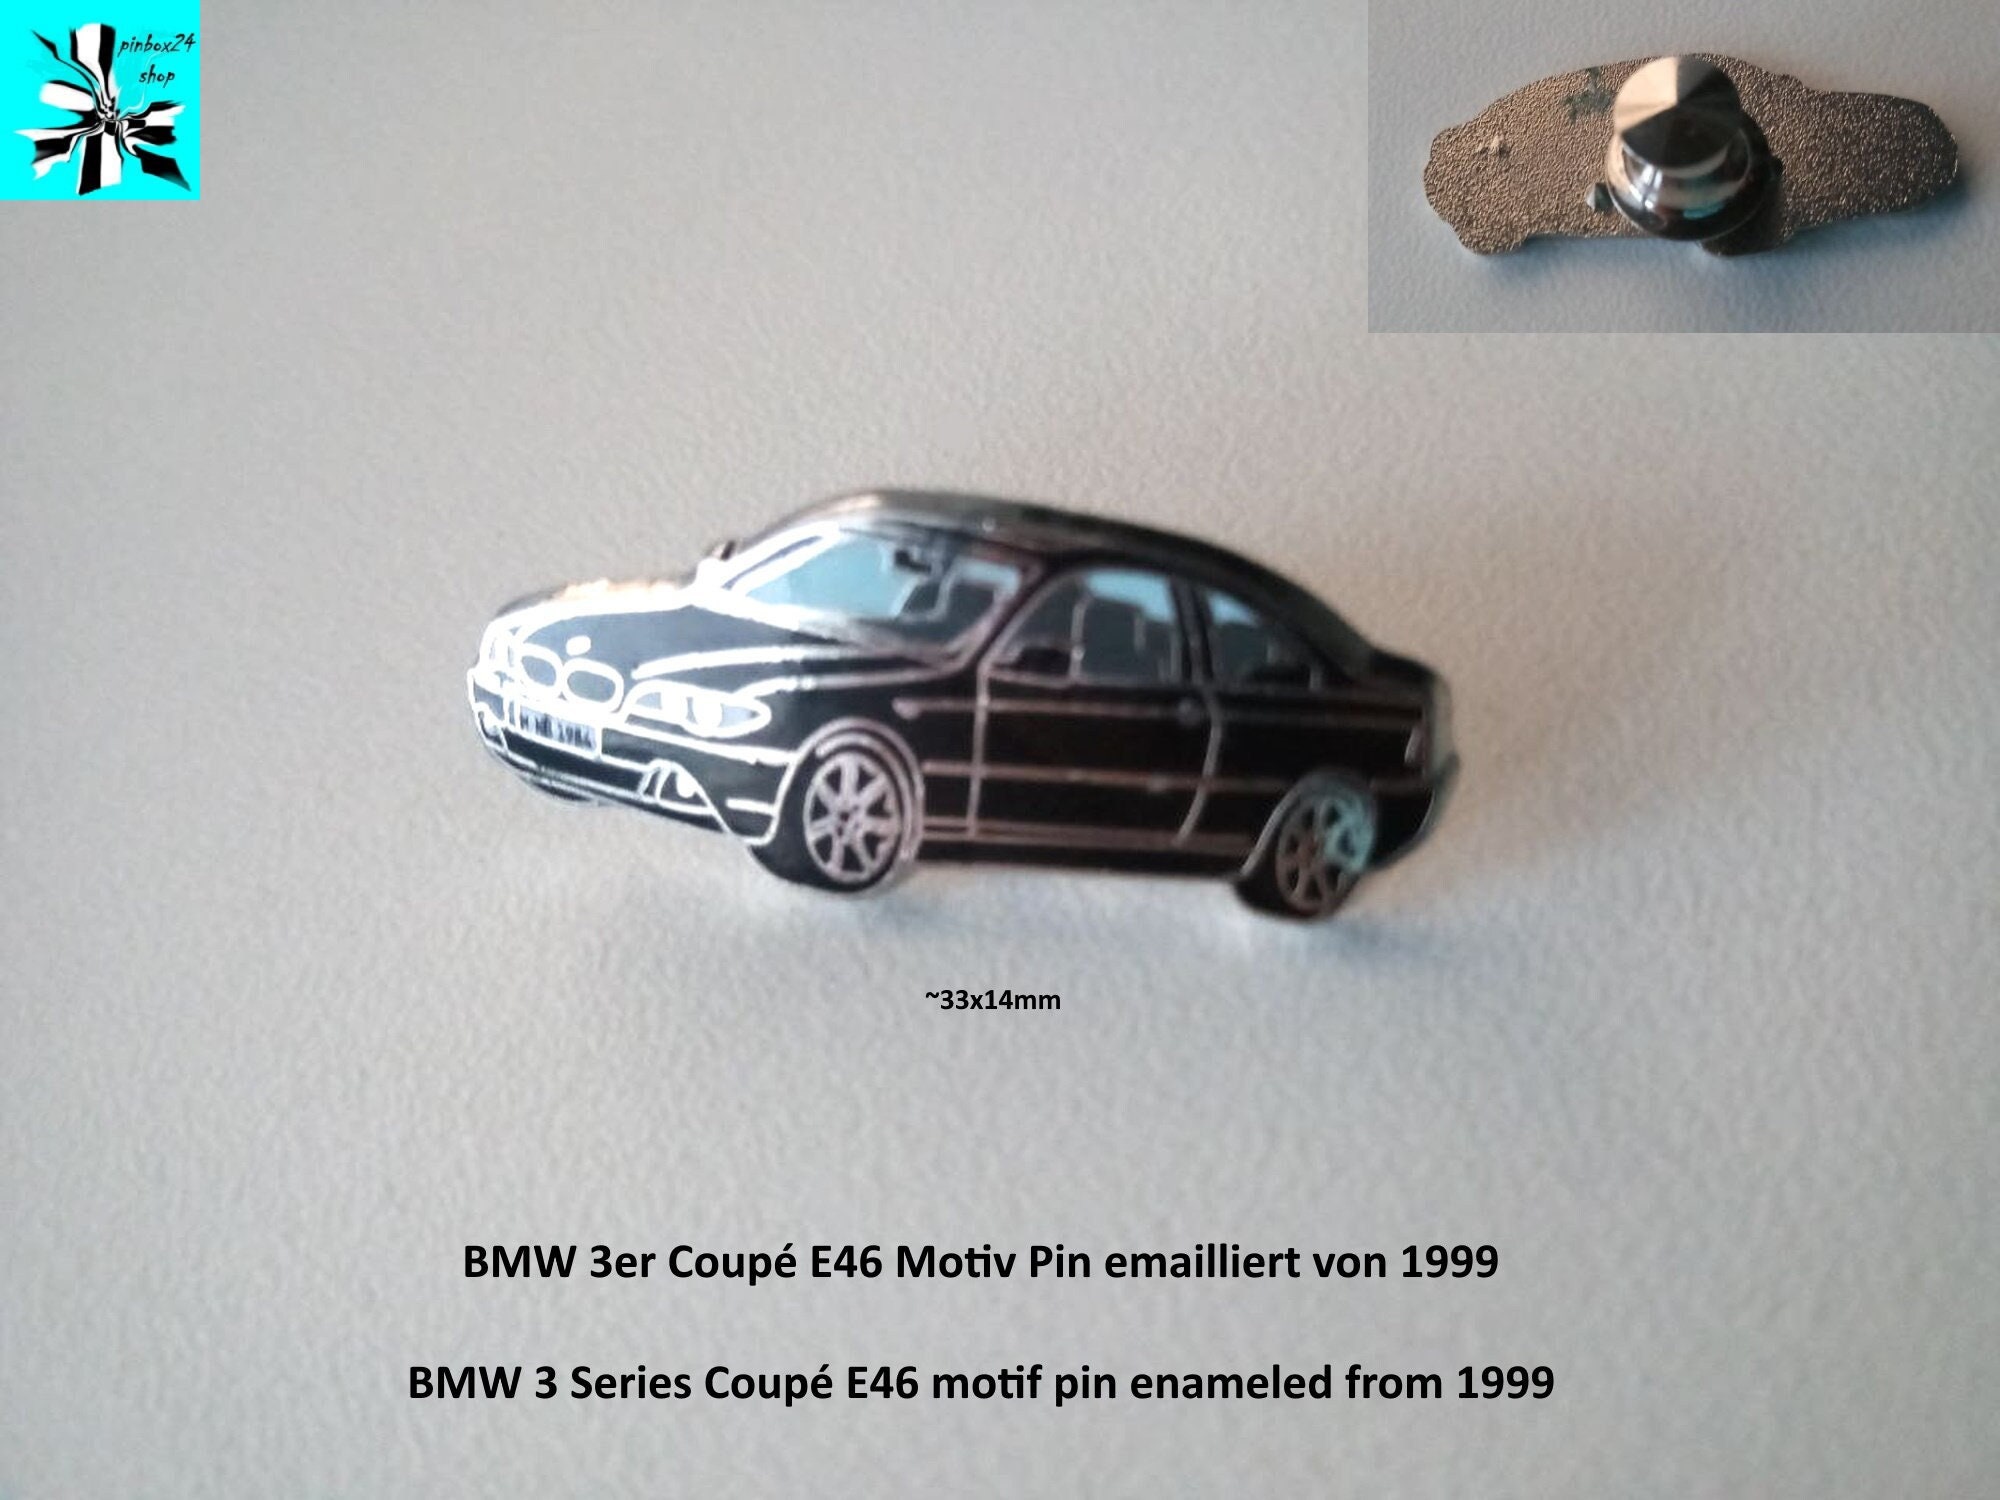 Modellauto BMW M5 Maisto 1:18 in 86343 Königsbrunn für € 25,00 zum